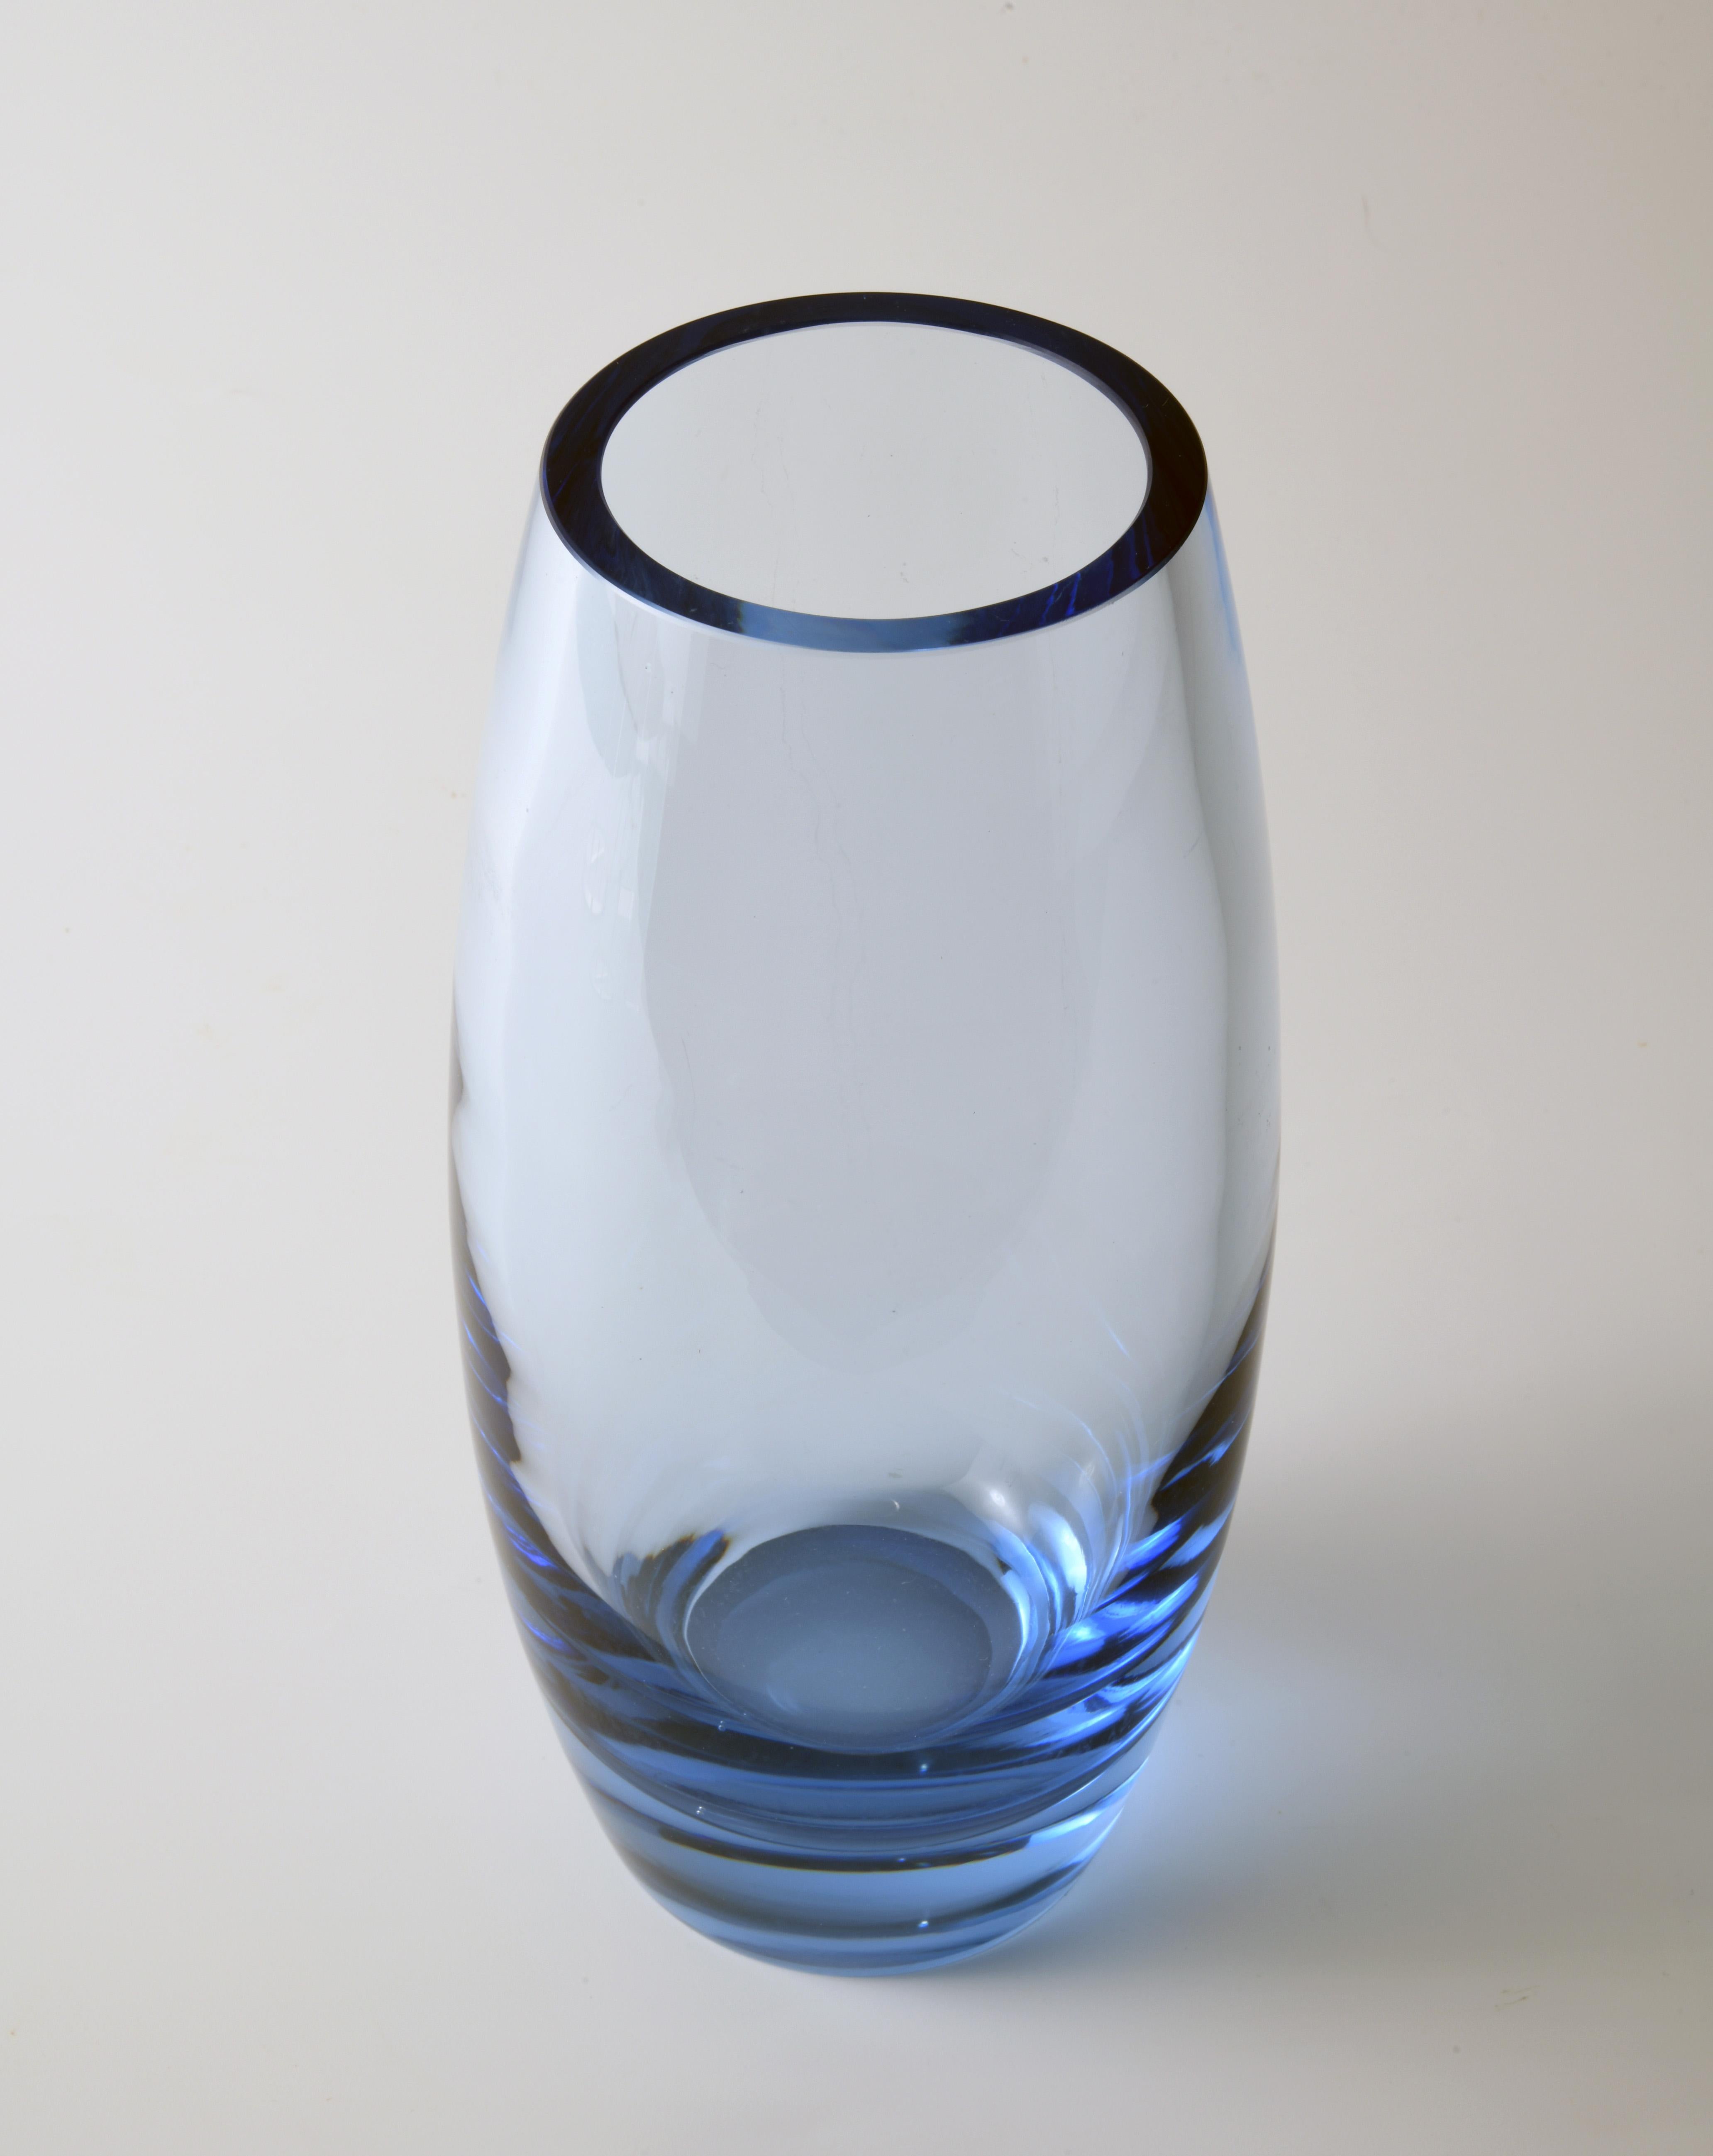 Scandinavian Modern Vintage Danish Glass Vase by Per Lutken for Holmegaard in 1960s For Sale